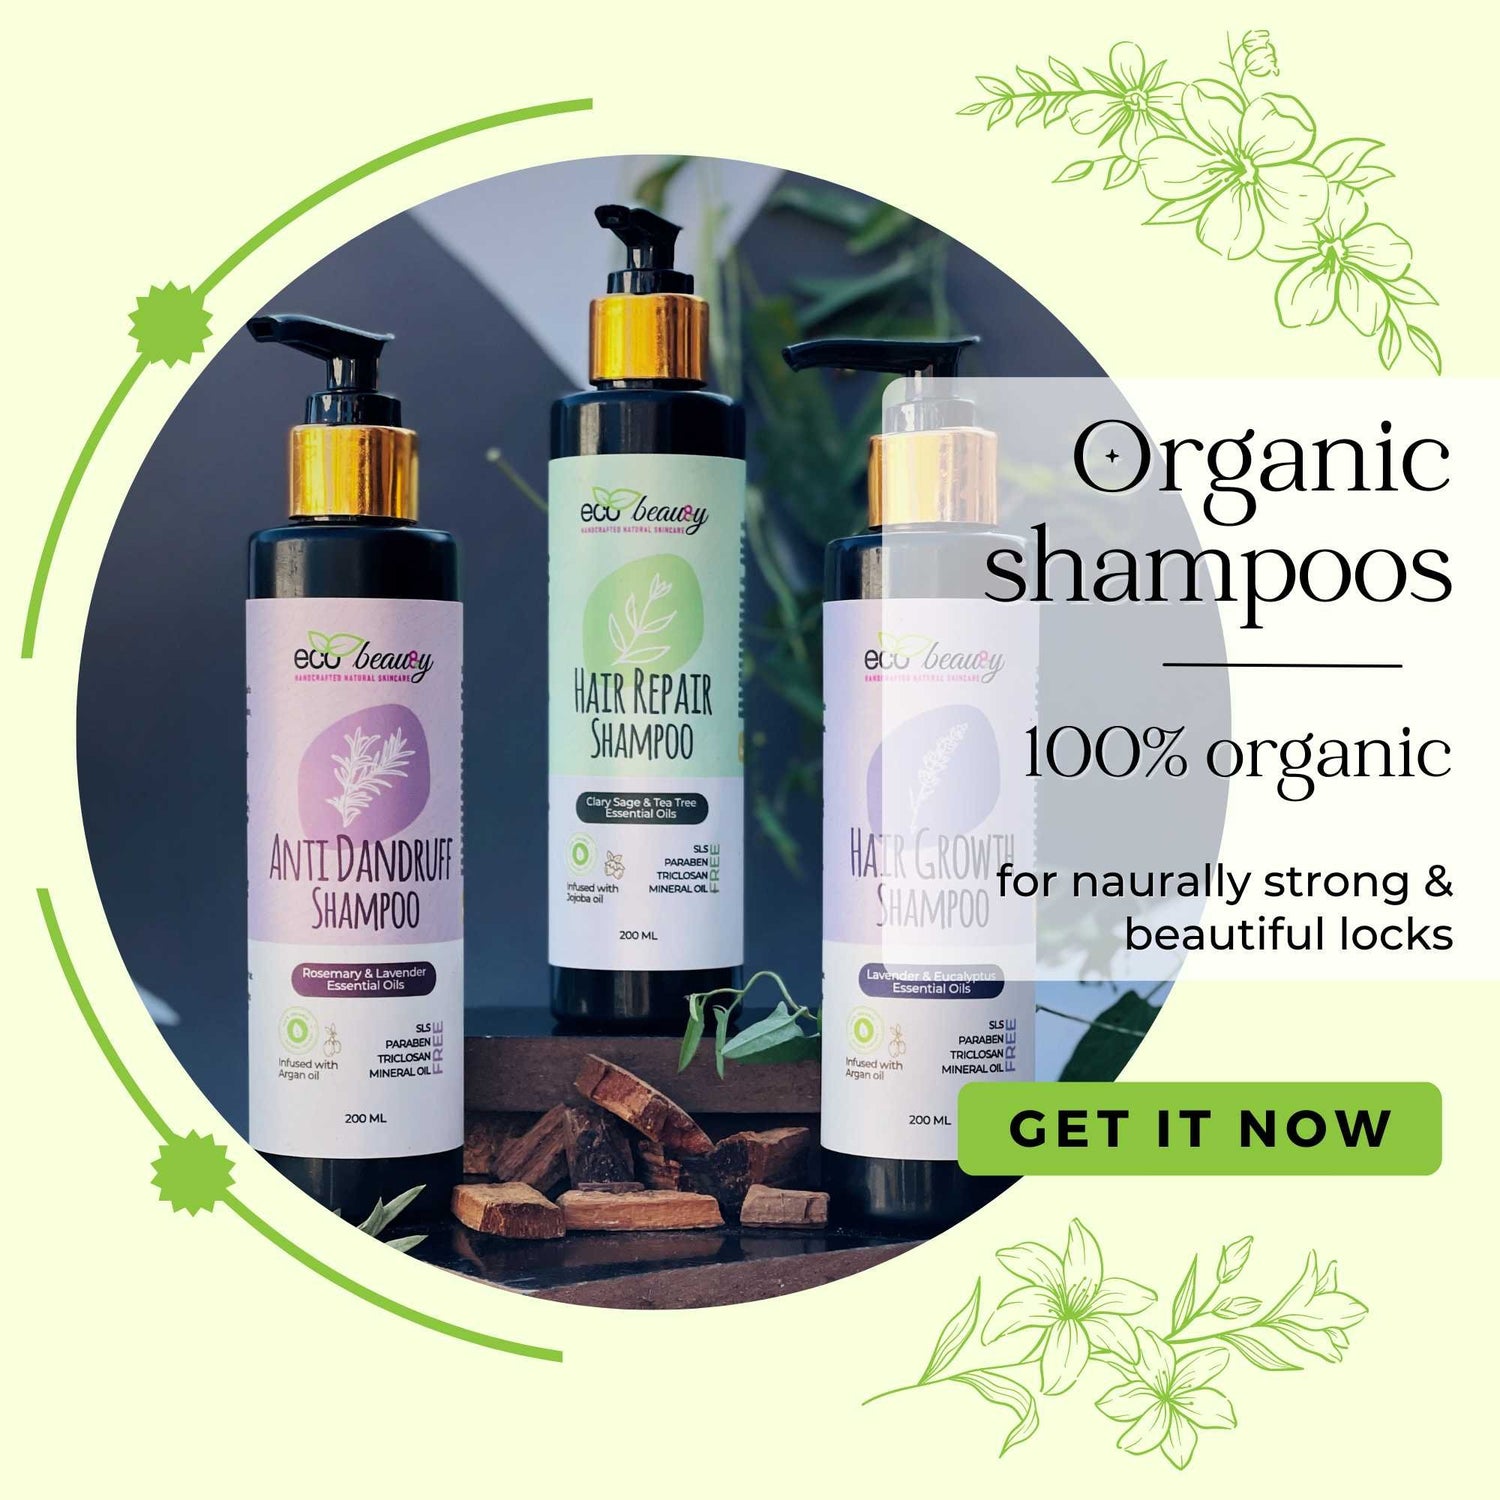 Organic shampoos - ecobeau8y